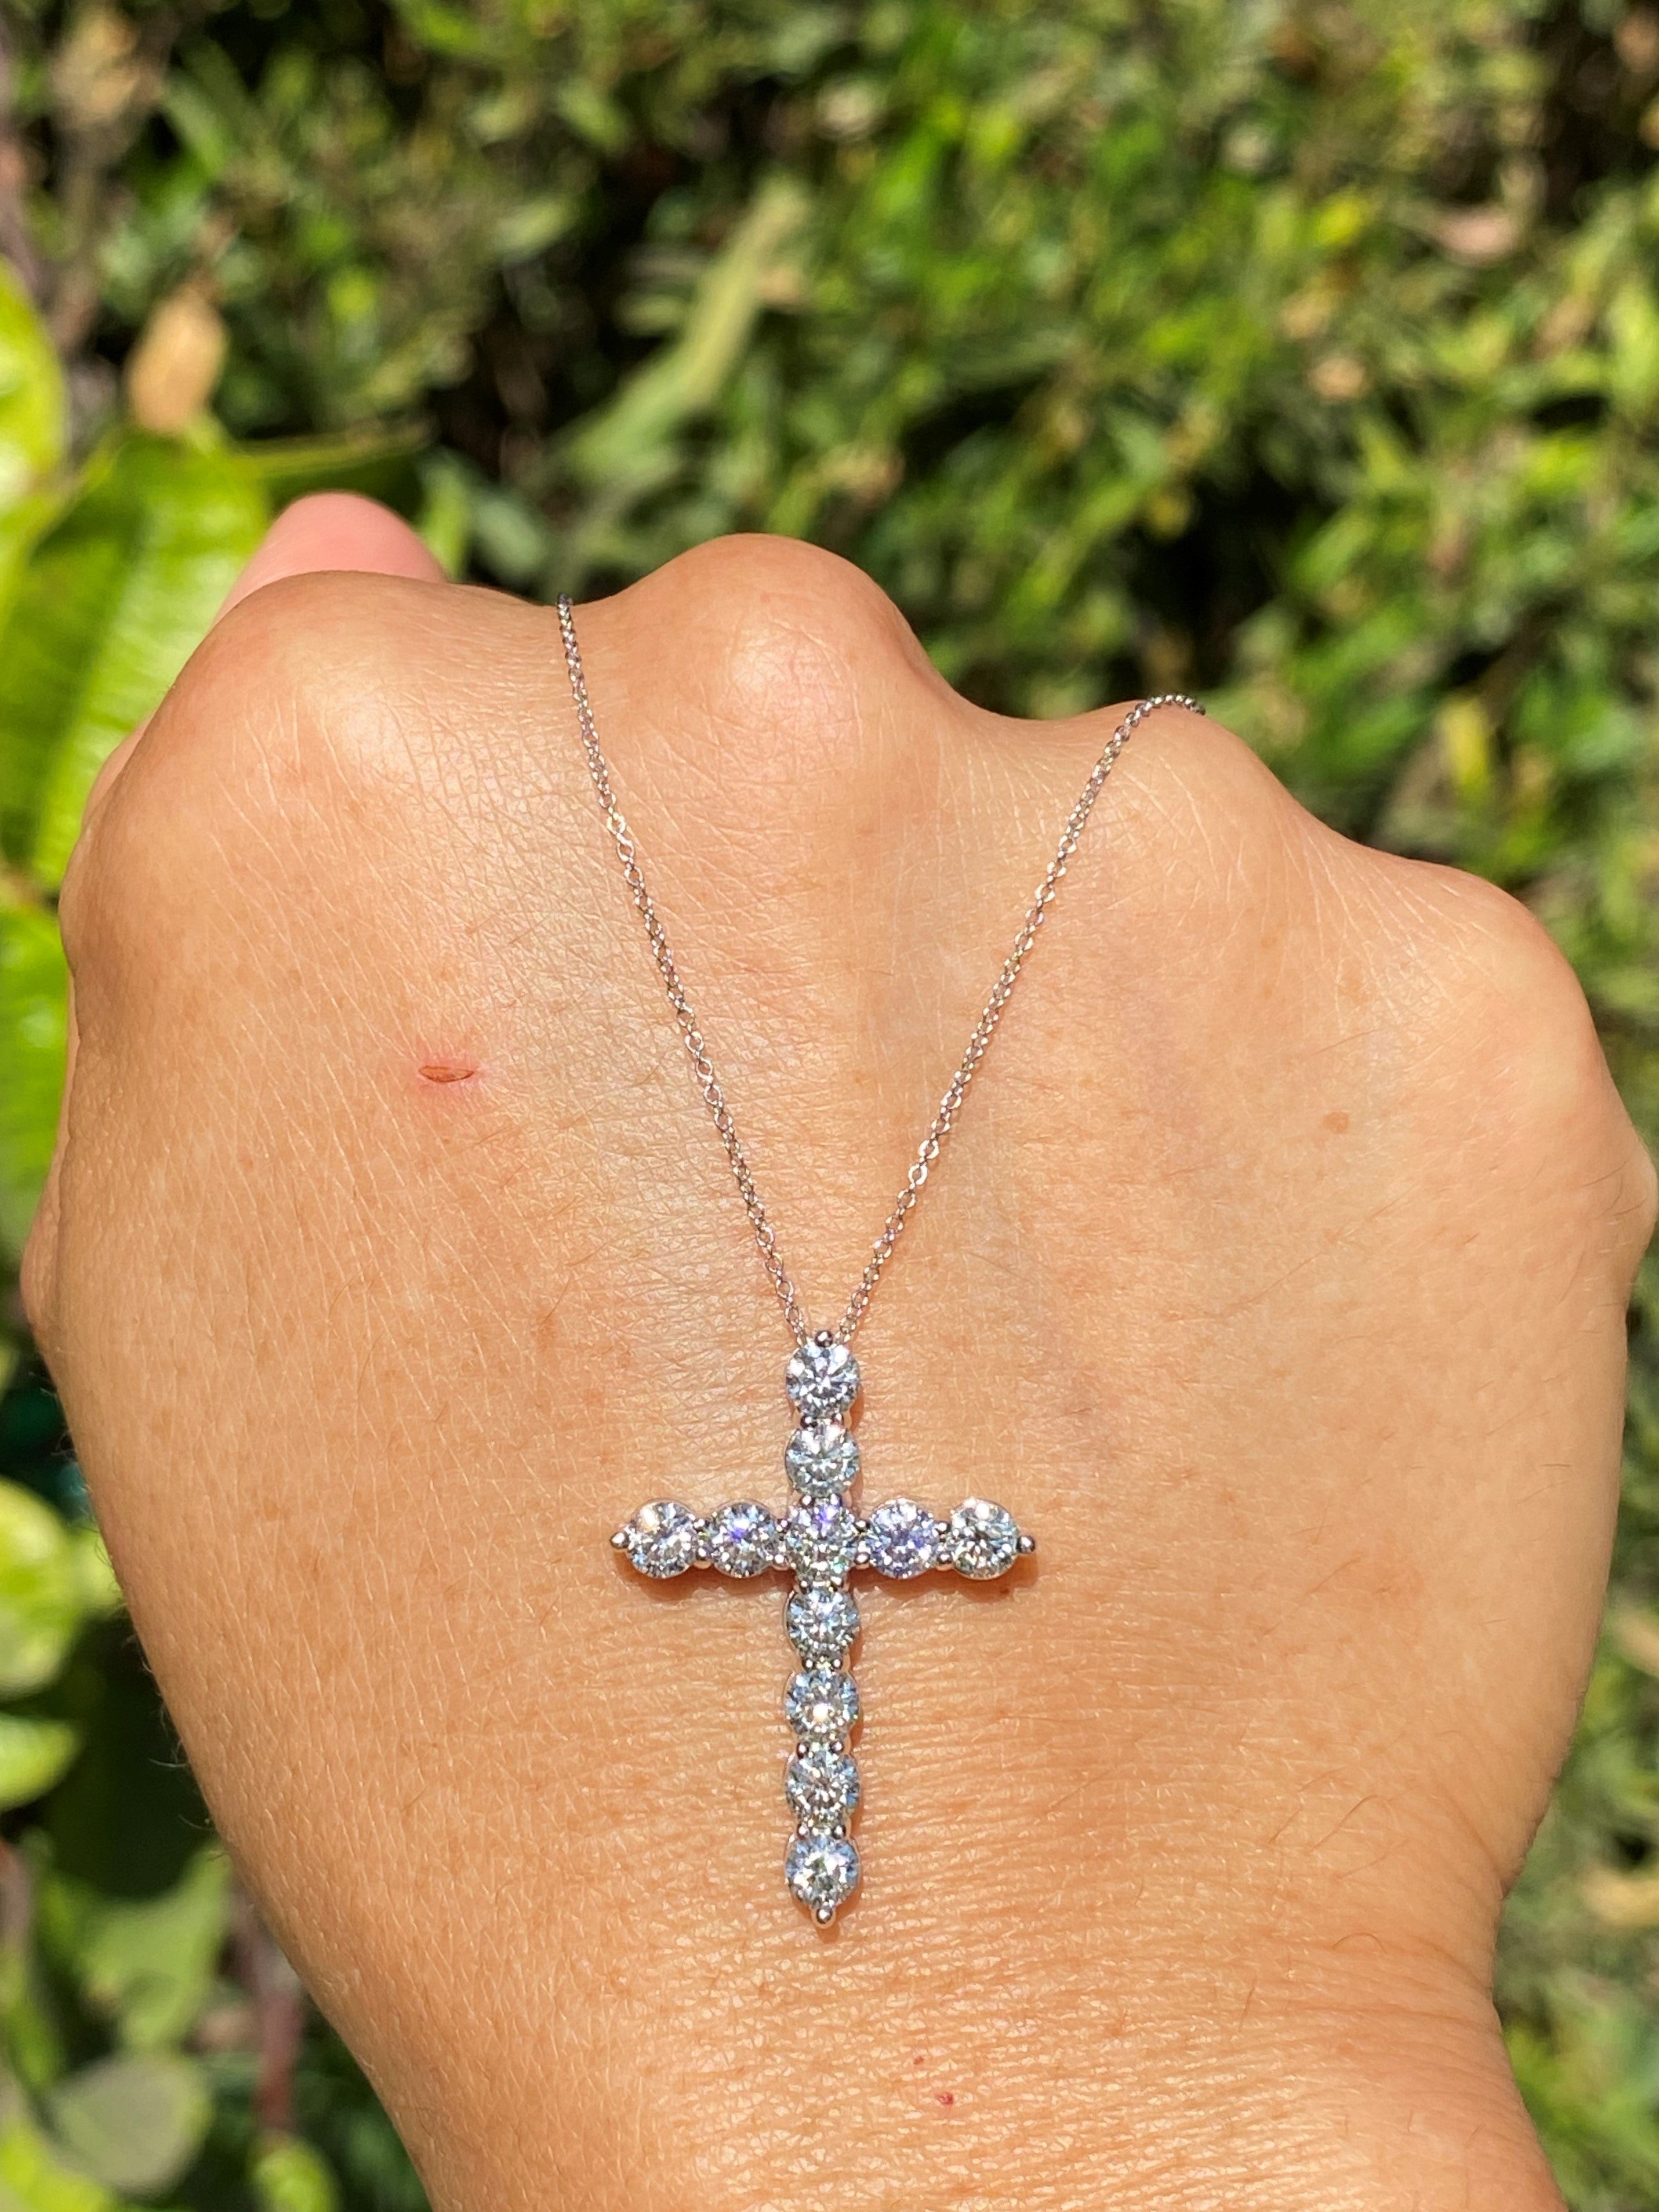 6 Stone Diamond Cross Necklace – San Antonio Jewelry